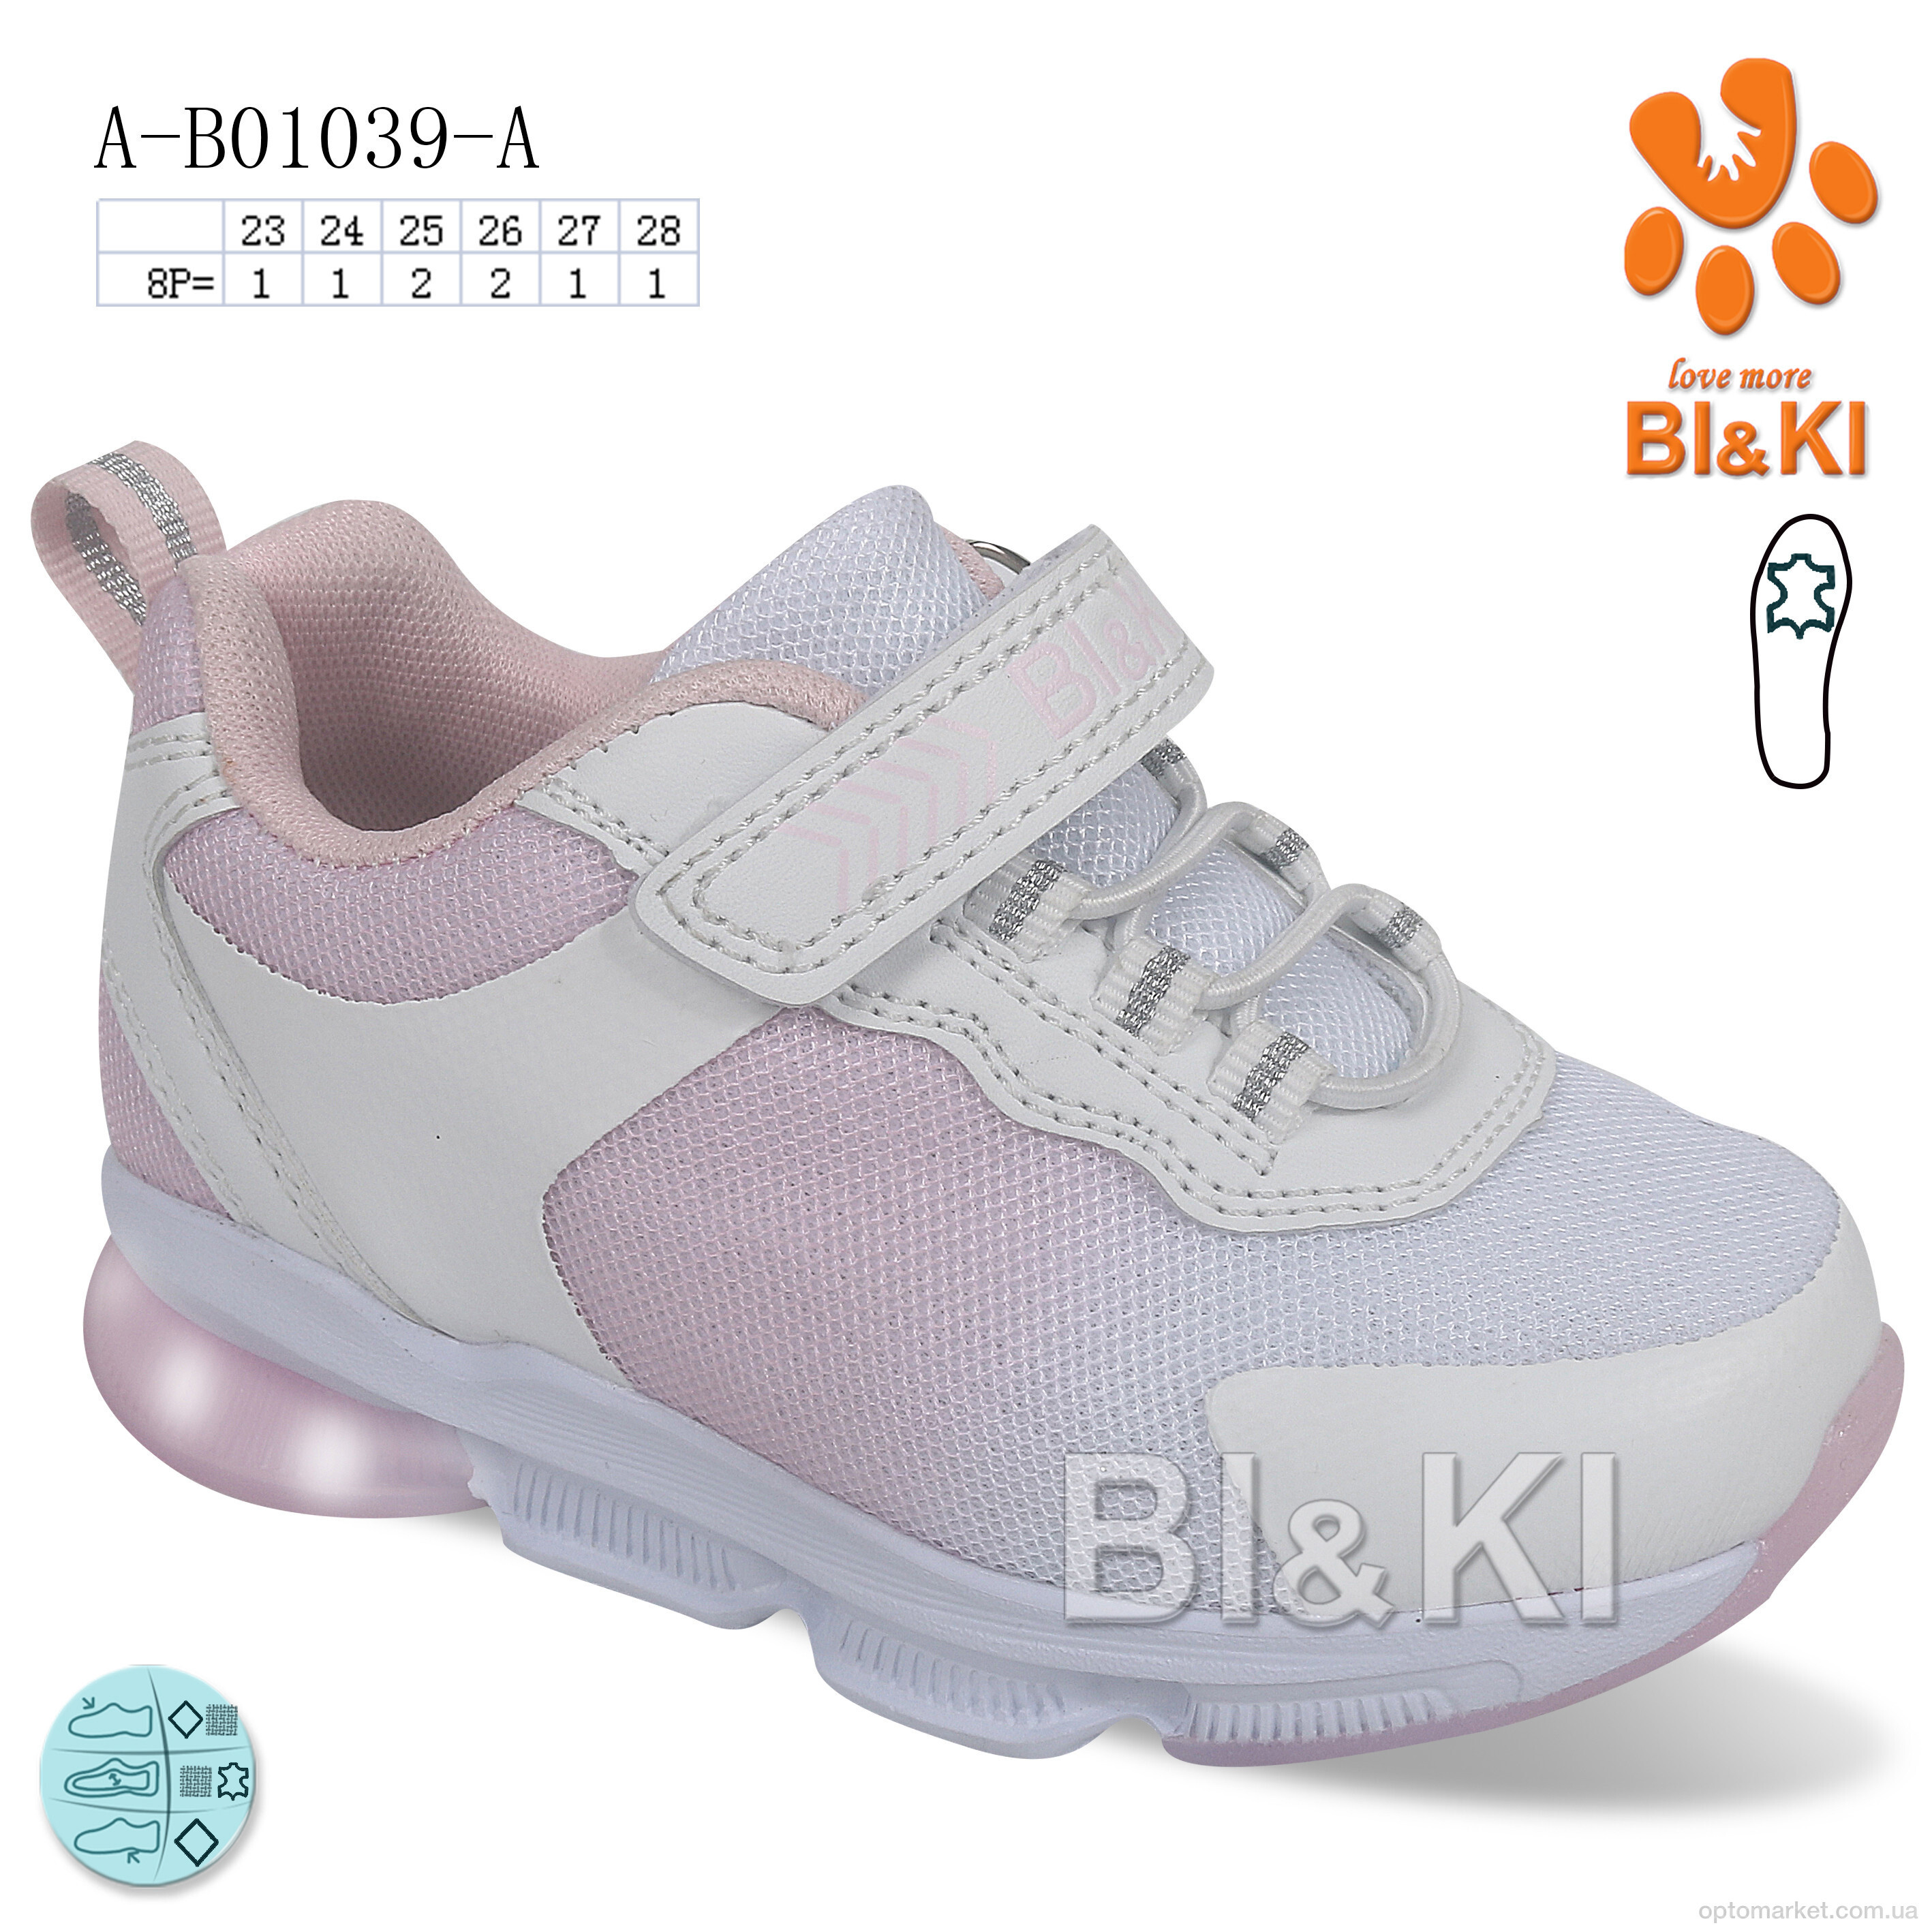 Купить Кросівки дитячі A-B01039-A LED Bi&Ki білий, фото 1